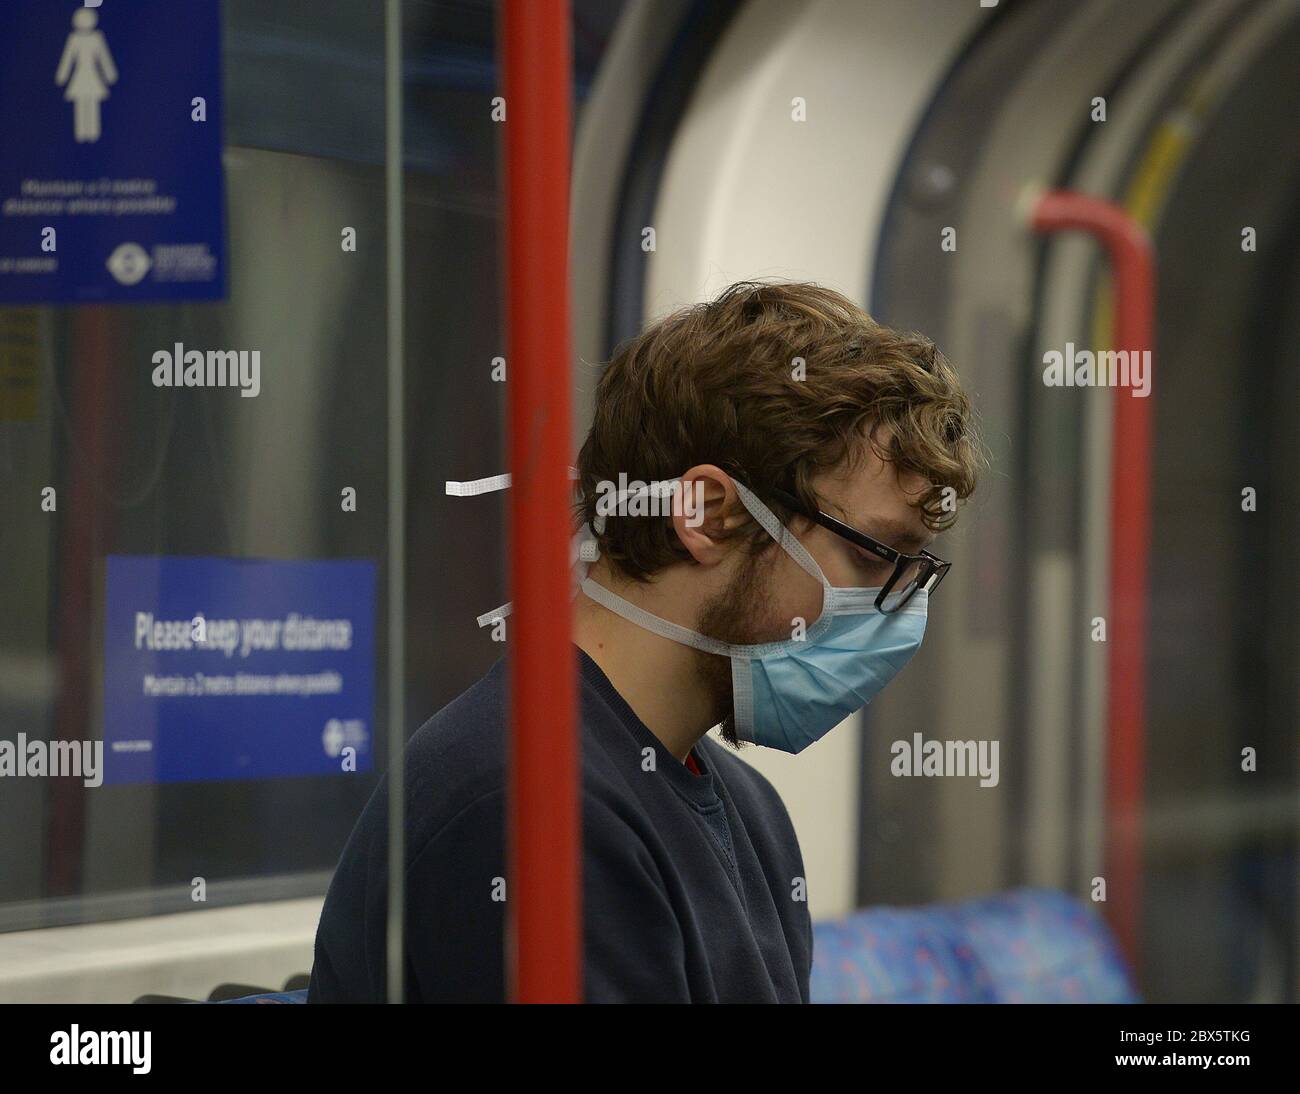 Un passeggero indossa una maschera facciale su un treno sotterraneo della Central Line, dopo l'annuncio che l'uso di una copertura facciale sarà obbligatorio per i passeggeri sui trasporti pubblici in Inghilterra a partire da giugno 15. Foto Stock